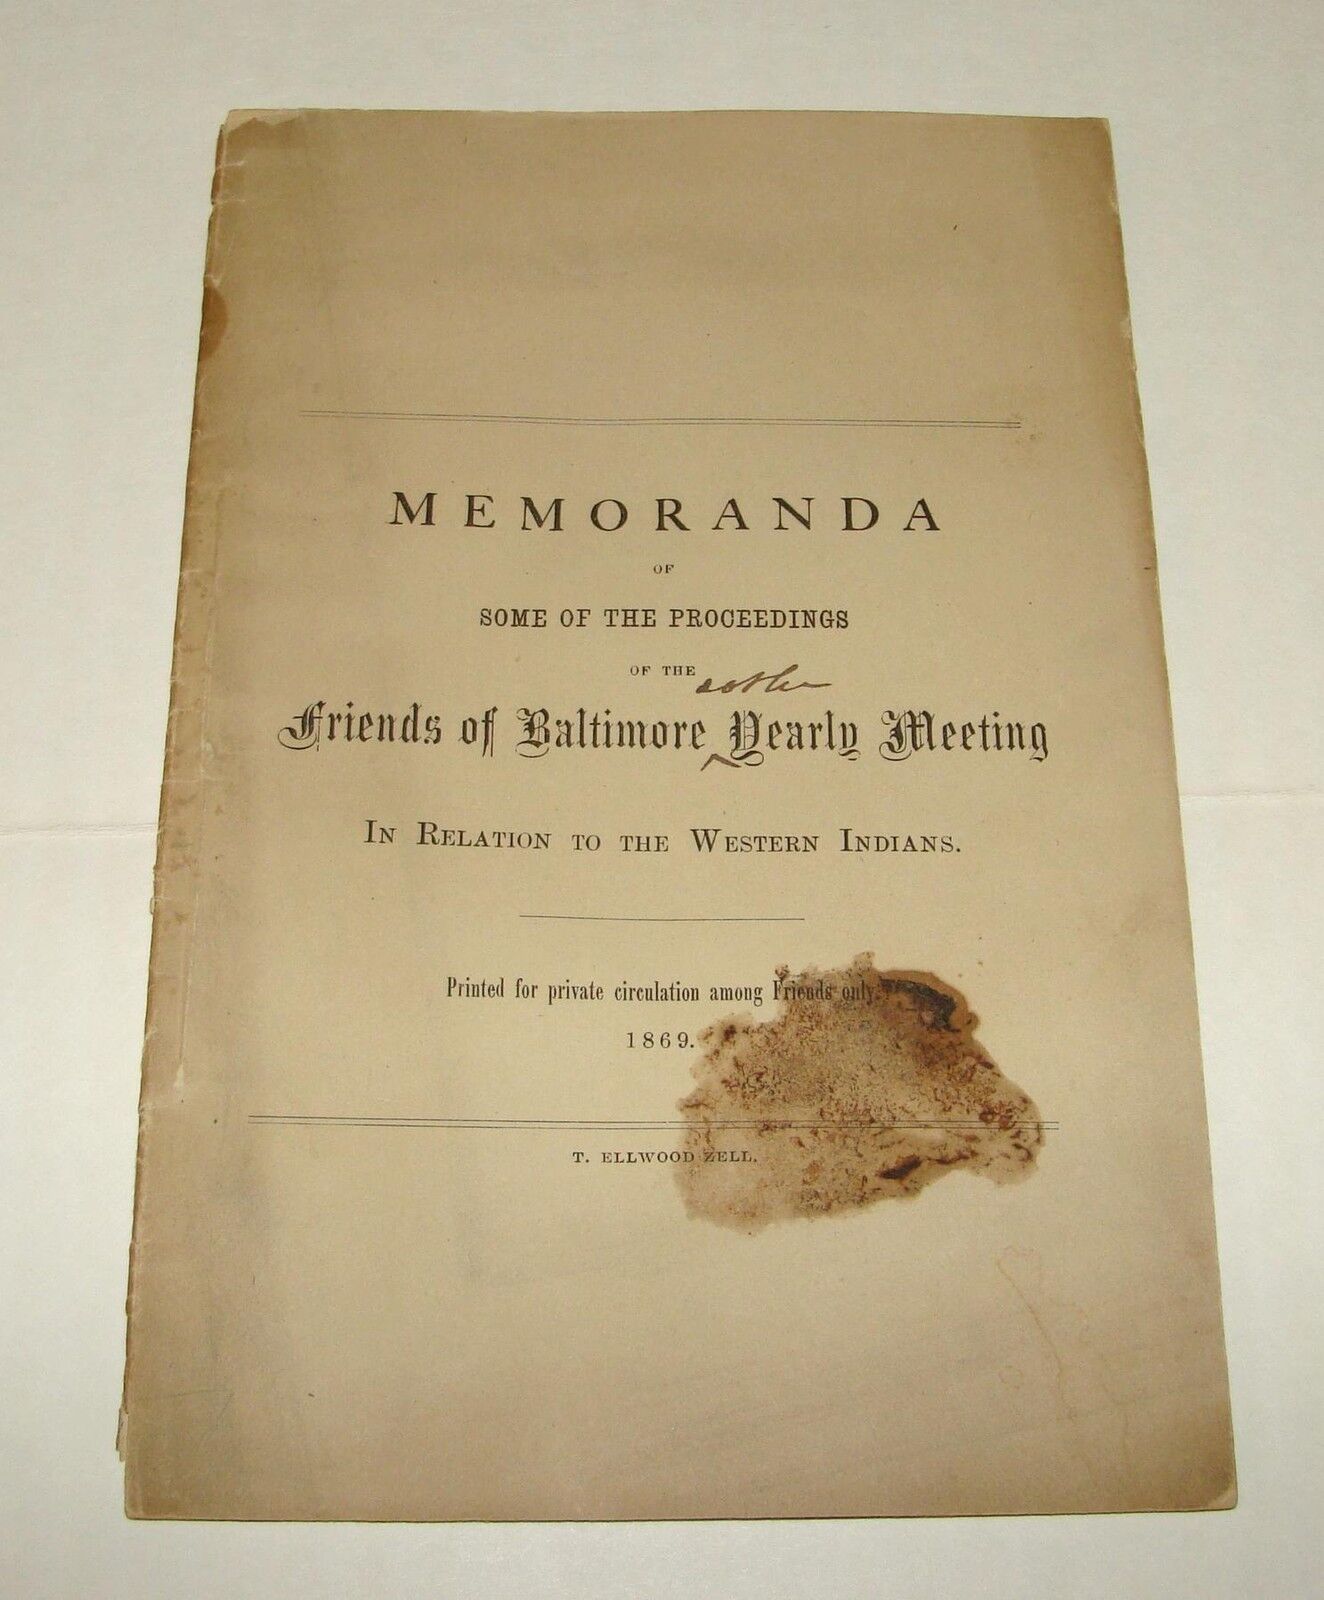 ORIG 1869 MEMORANDA OF PROCEEDINGS - FRIENDS OF BALTIMORE ON AMERICAN INDIANS